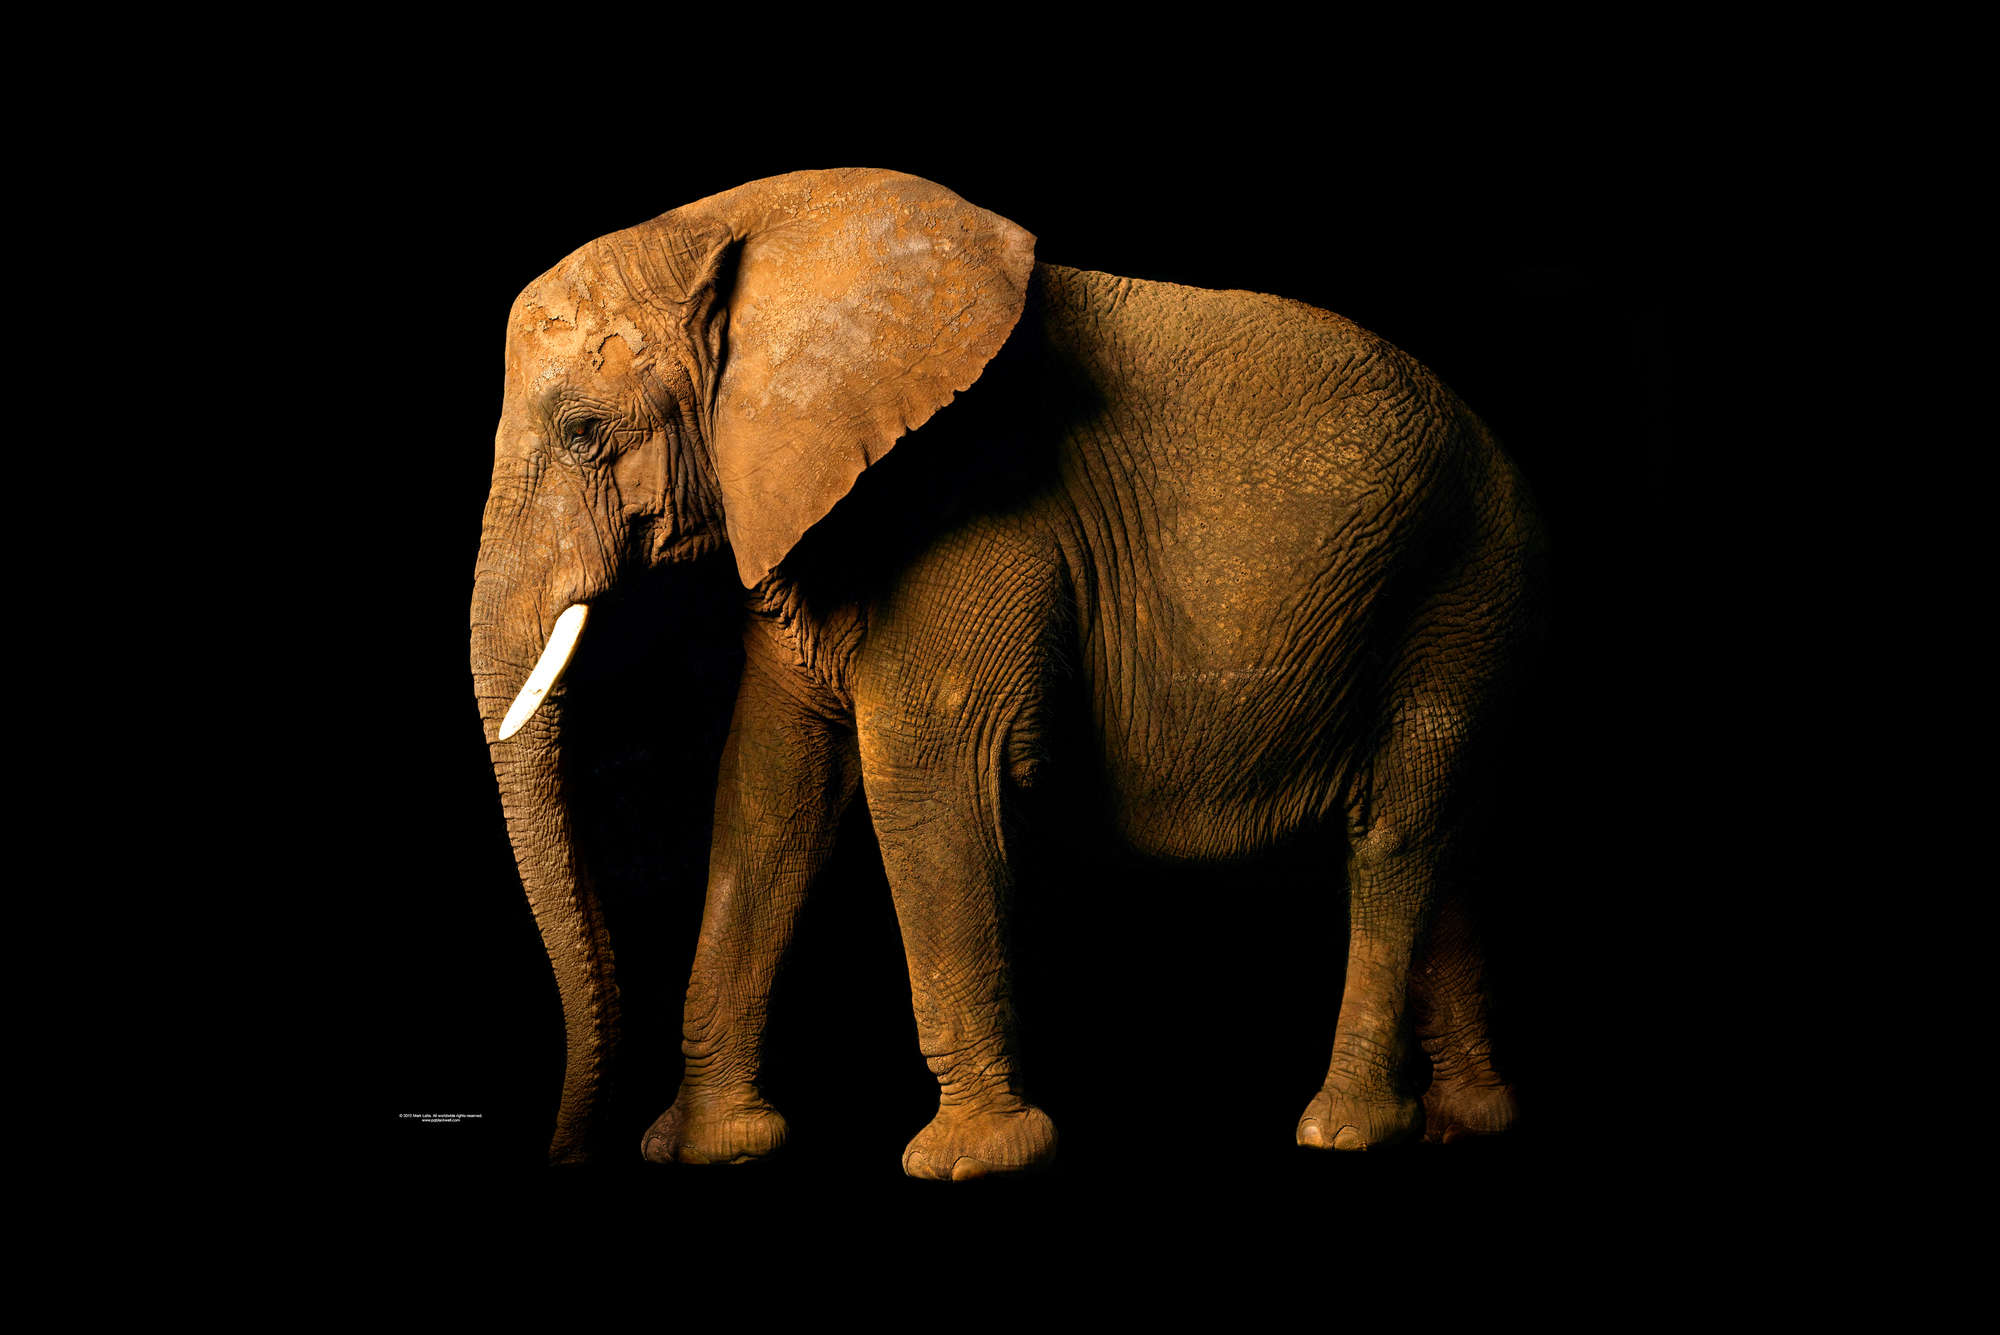             Eléphant - papier peint avec portrait d'animal
        